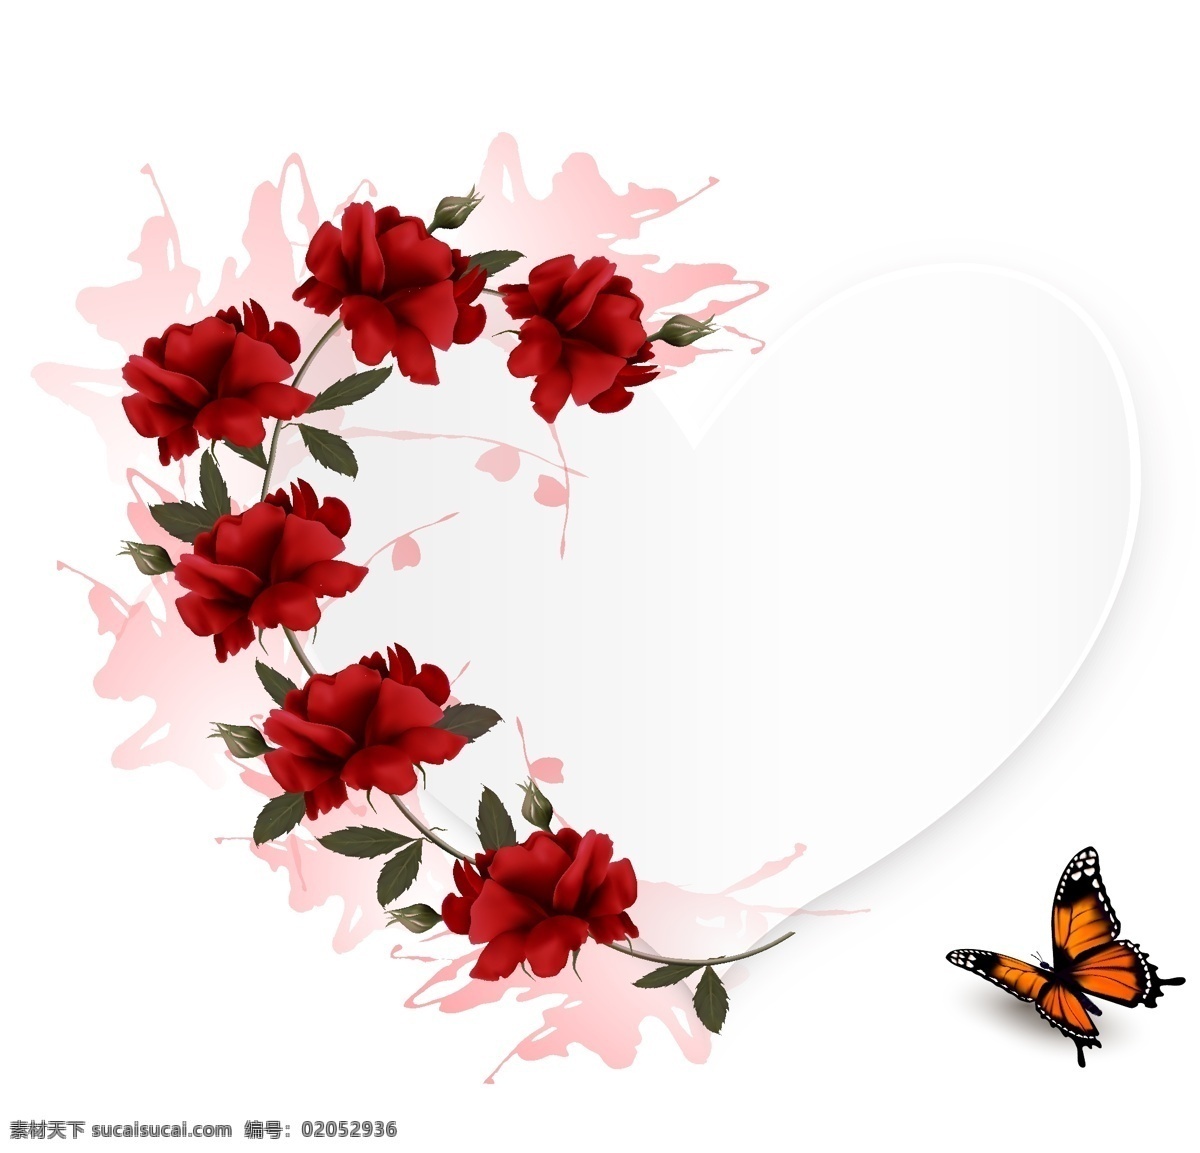 红玫瑰 蝴蝶 插画 爱情 浪漫 玫瑰花 植物